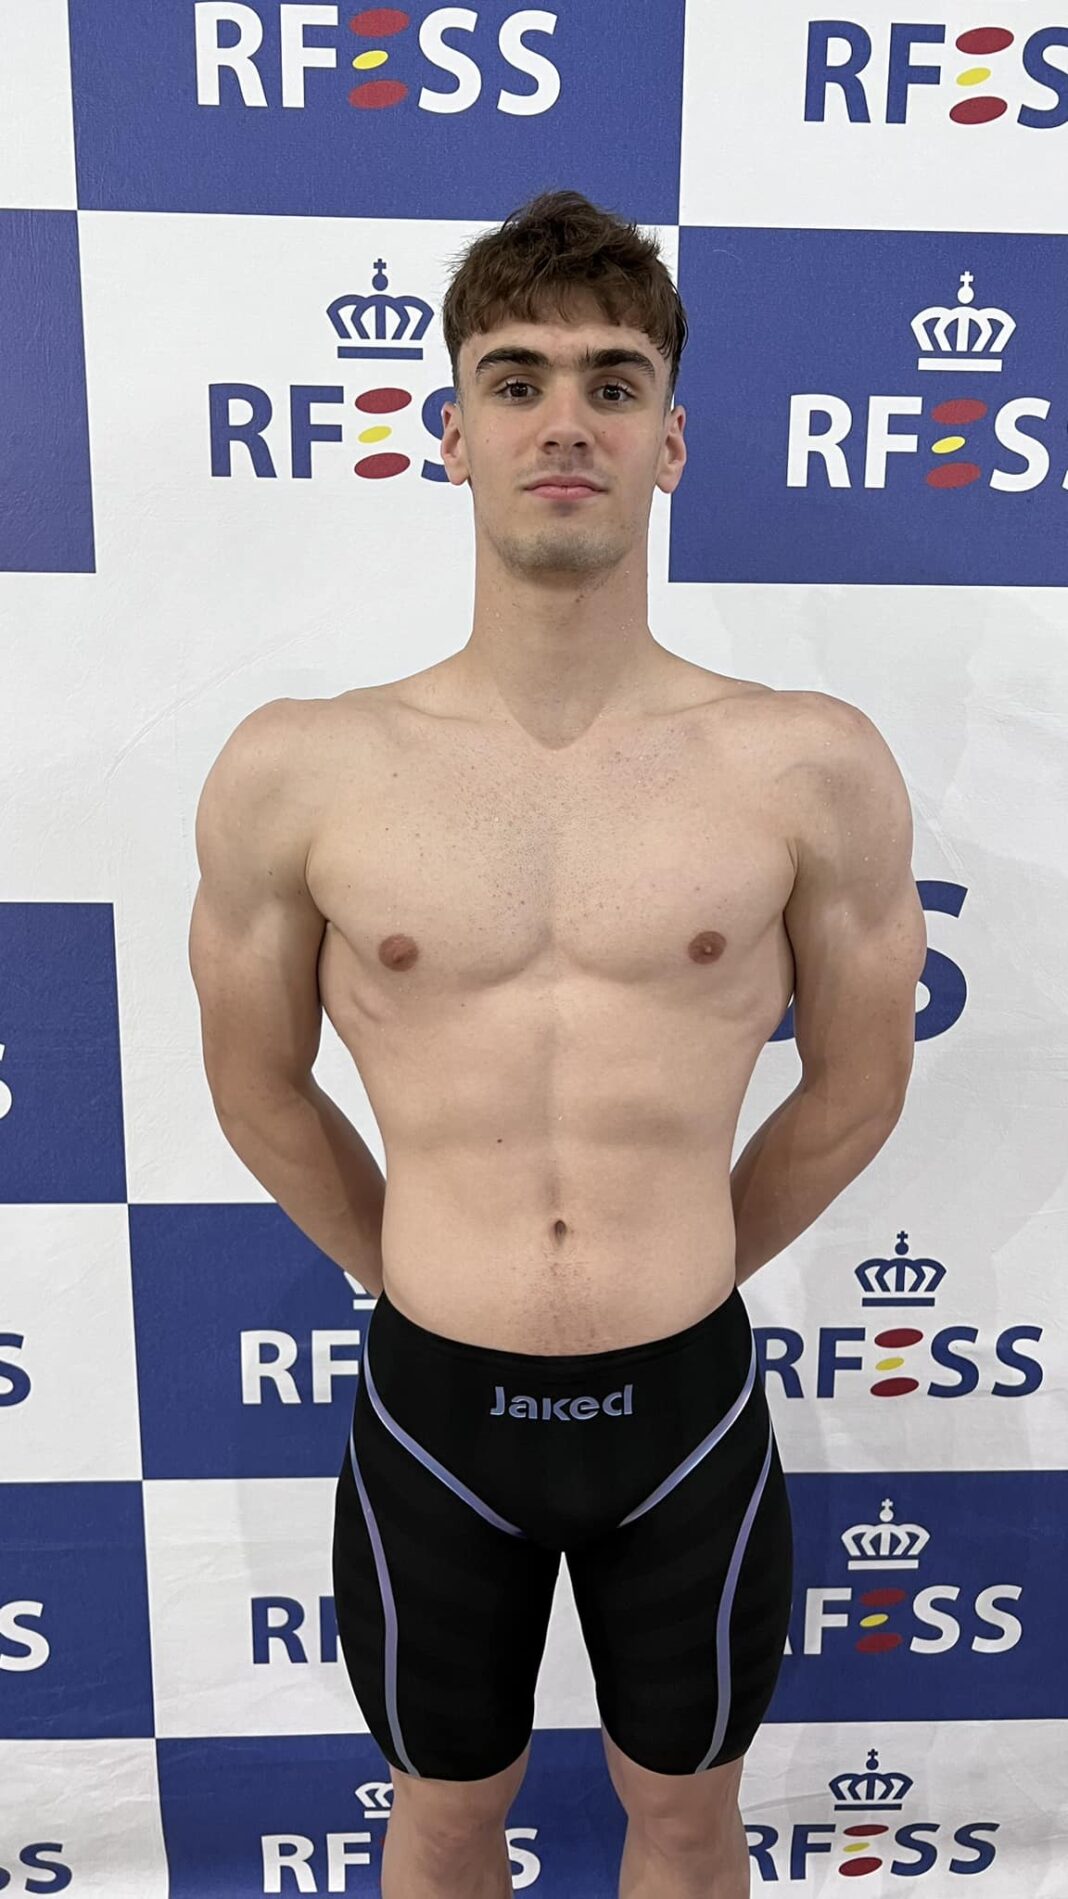 César Diego Alonso (Club A.C.N. Marisma) – Récord de España 50 metros remolque de maniquí en categoría júnior masculina (00:30:64 frente a 00:30:75).